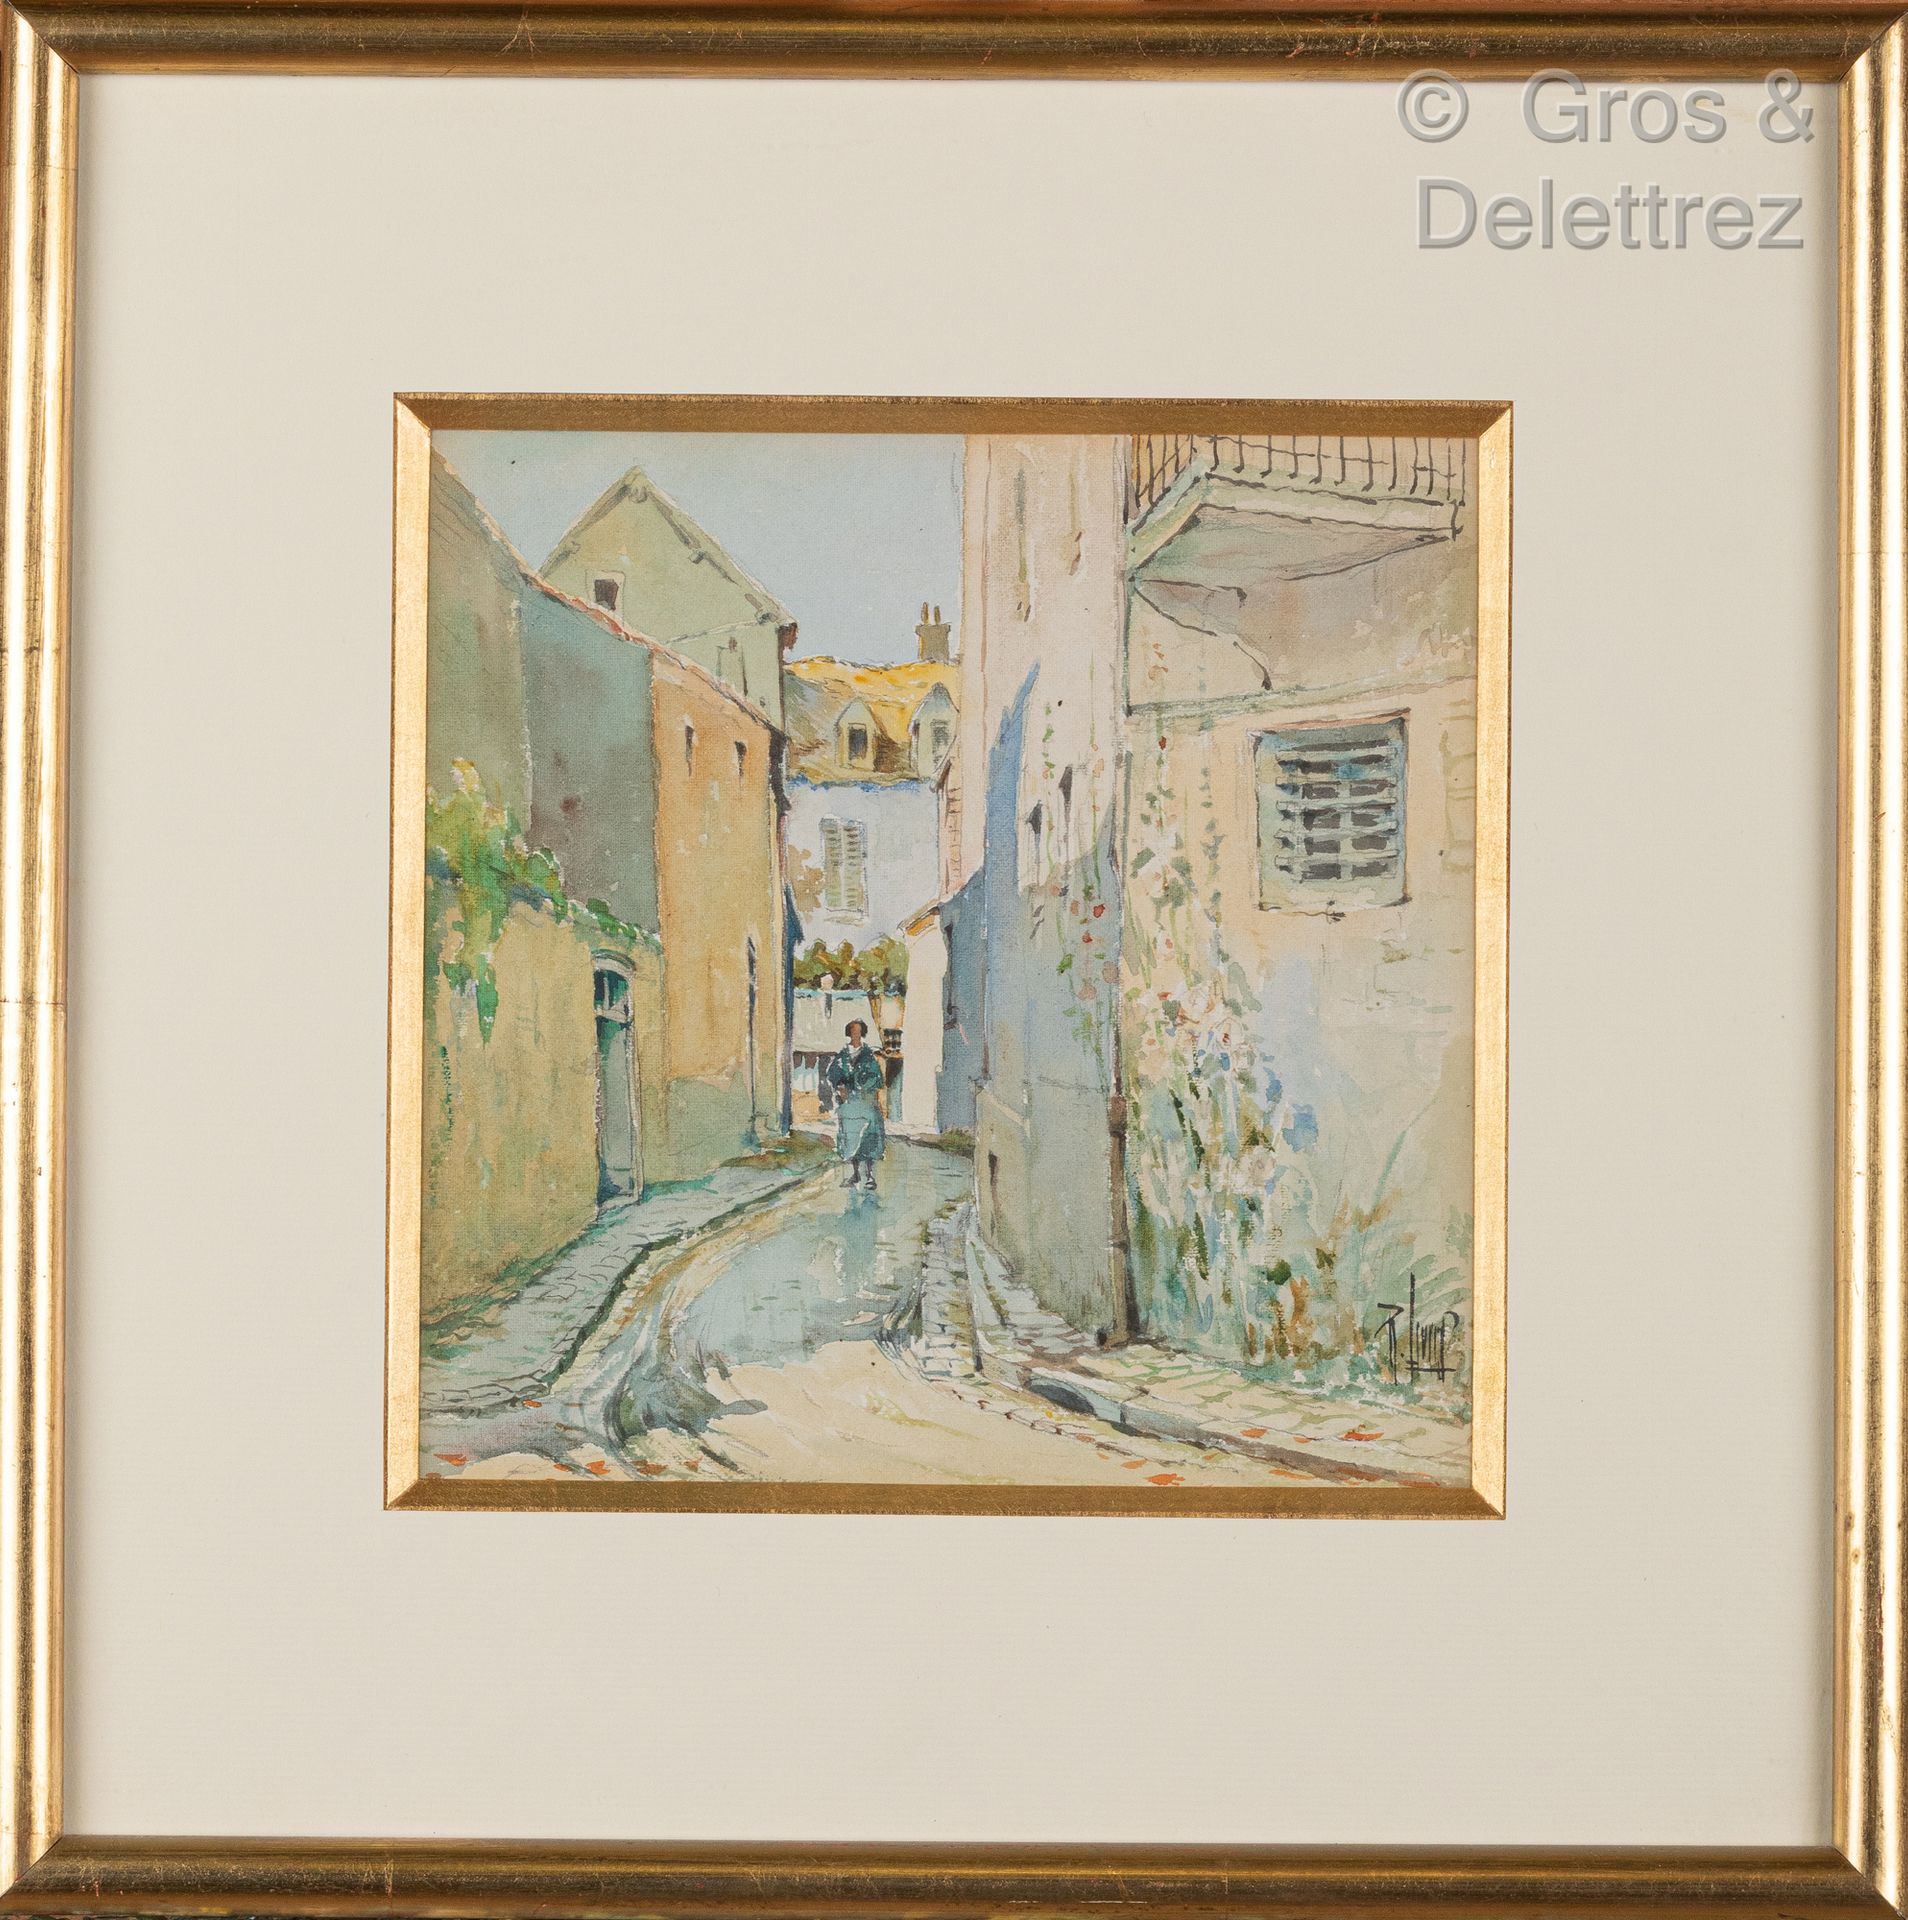 Null 勒内-莱维德 (1872-1938)

在村里漫步

纸上水彩和铅笔，右下方签名

18 x 18 cm